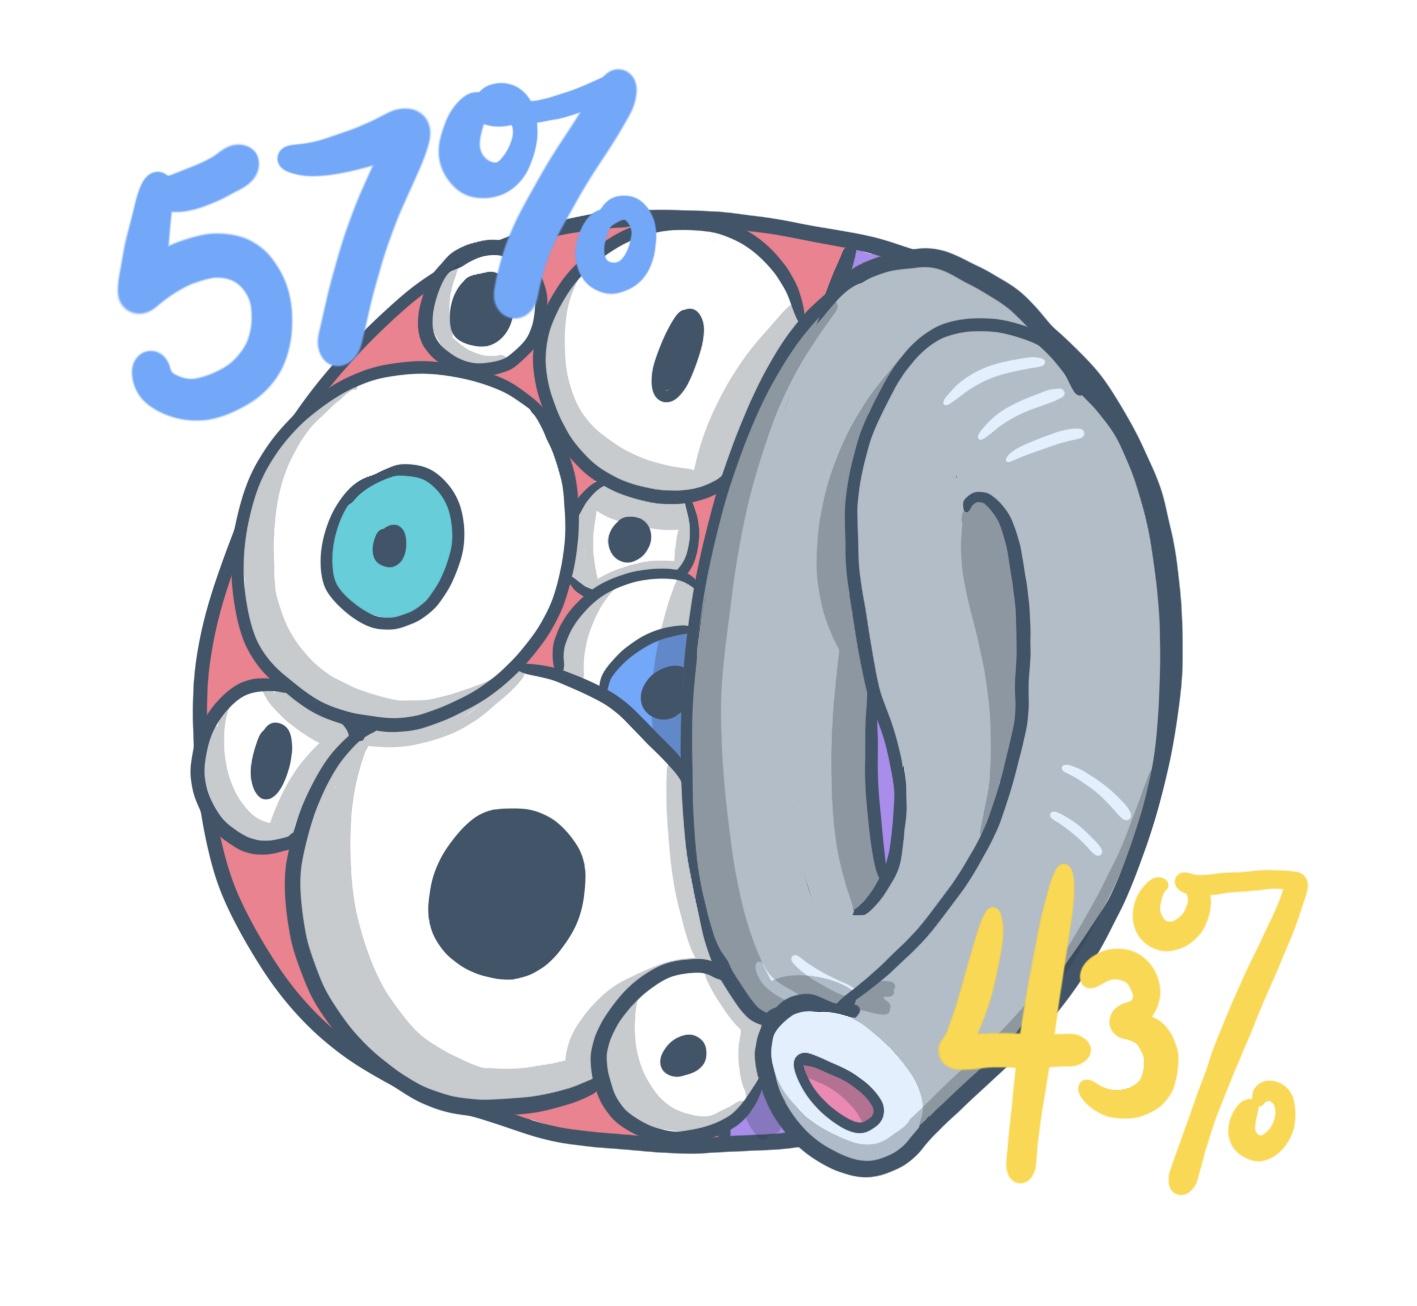 57% eyes, 43% trunk